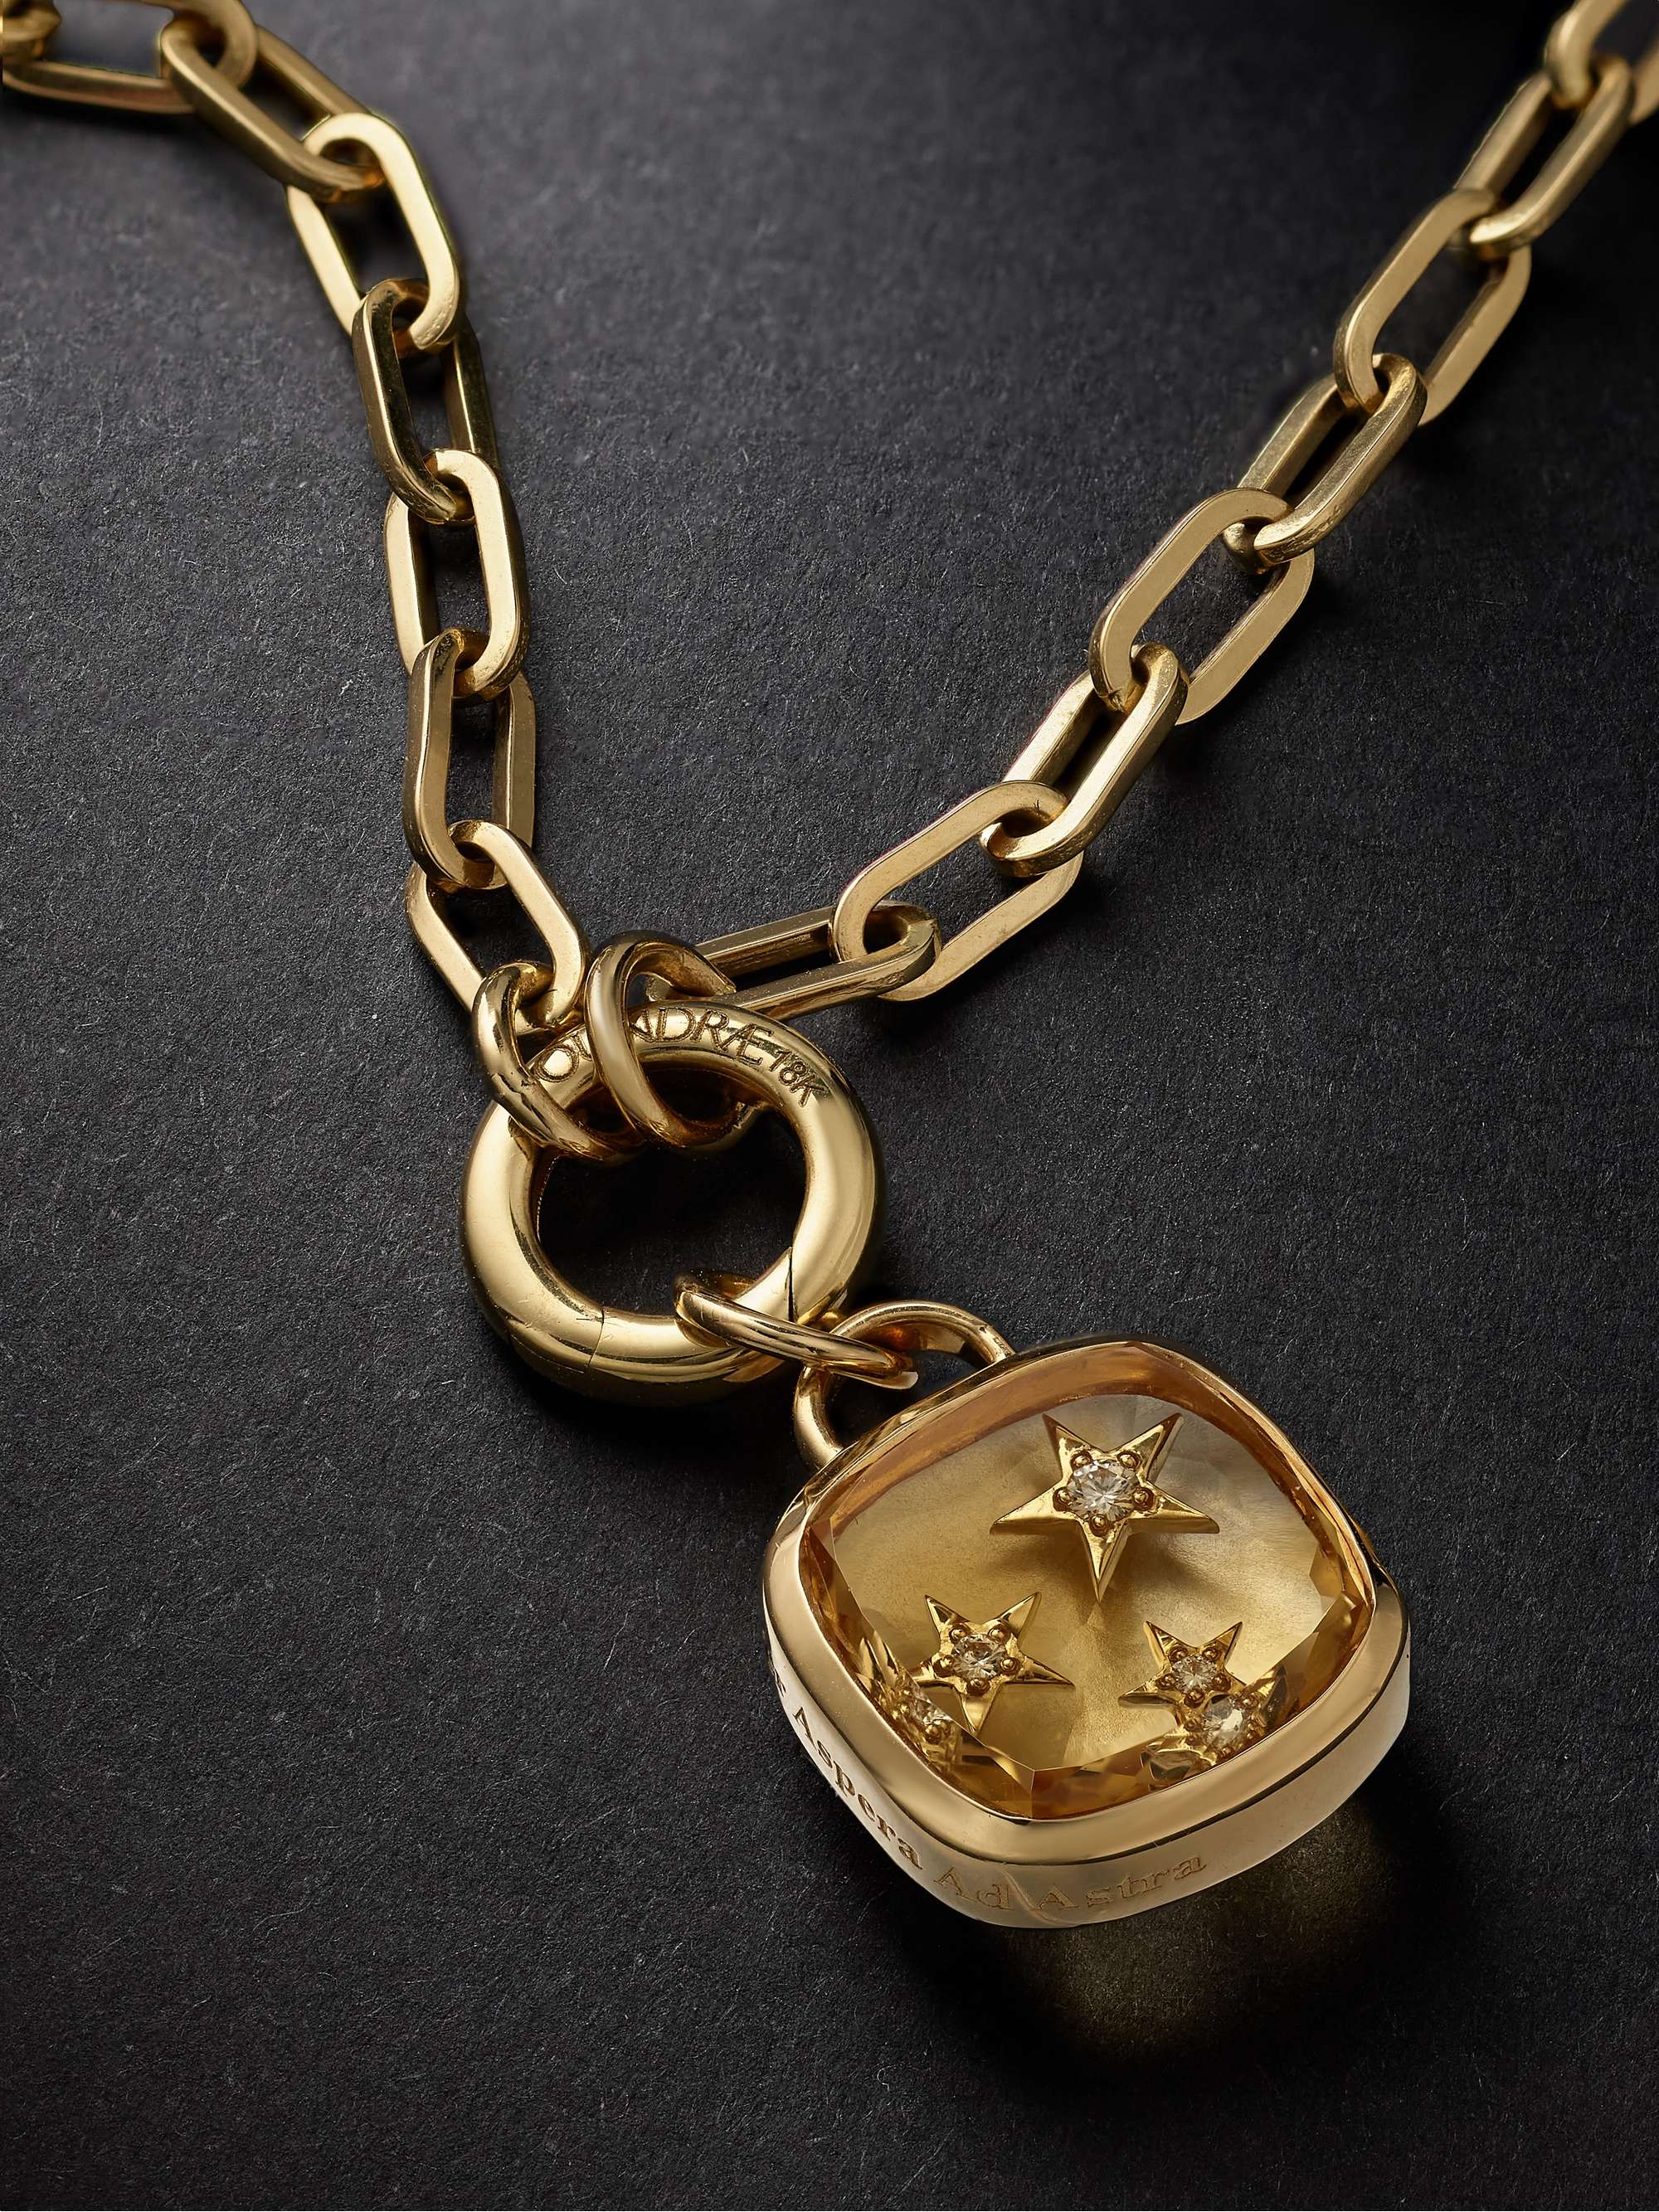 FOUNDRAE Refined Open Clip Chain and Per Aspera Ad Astra Dream Gold, Citrine and Diamond Pendant Necklace